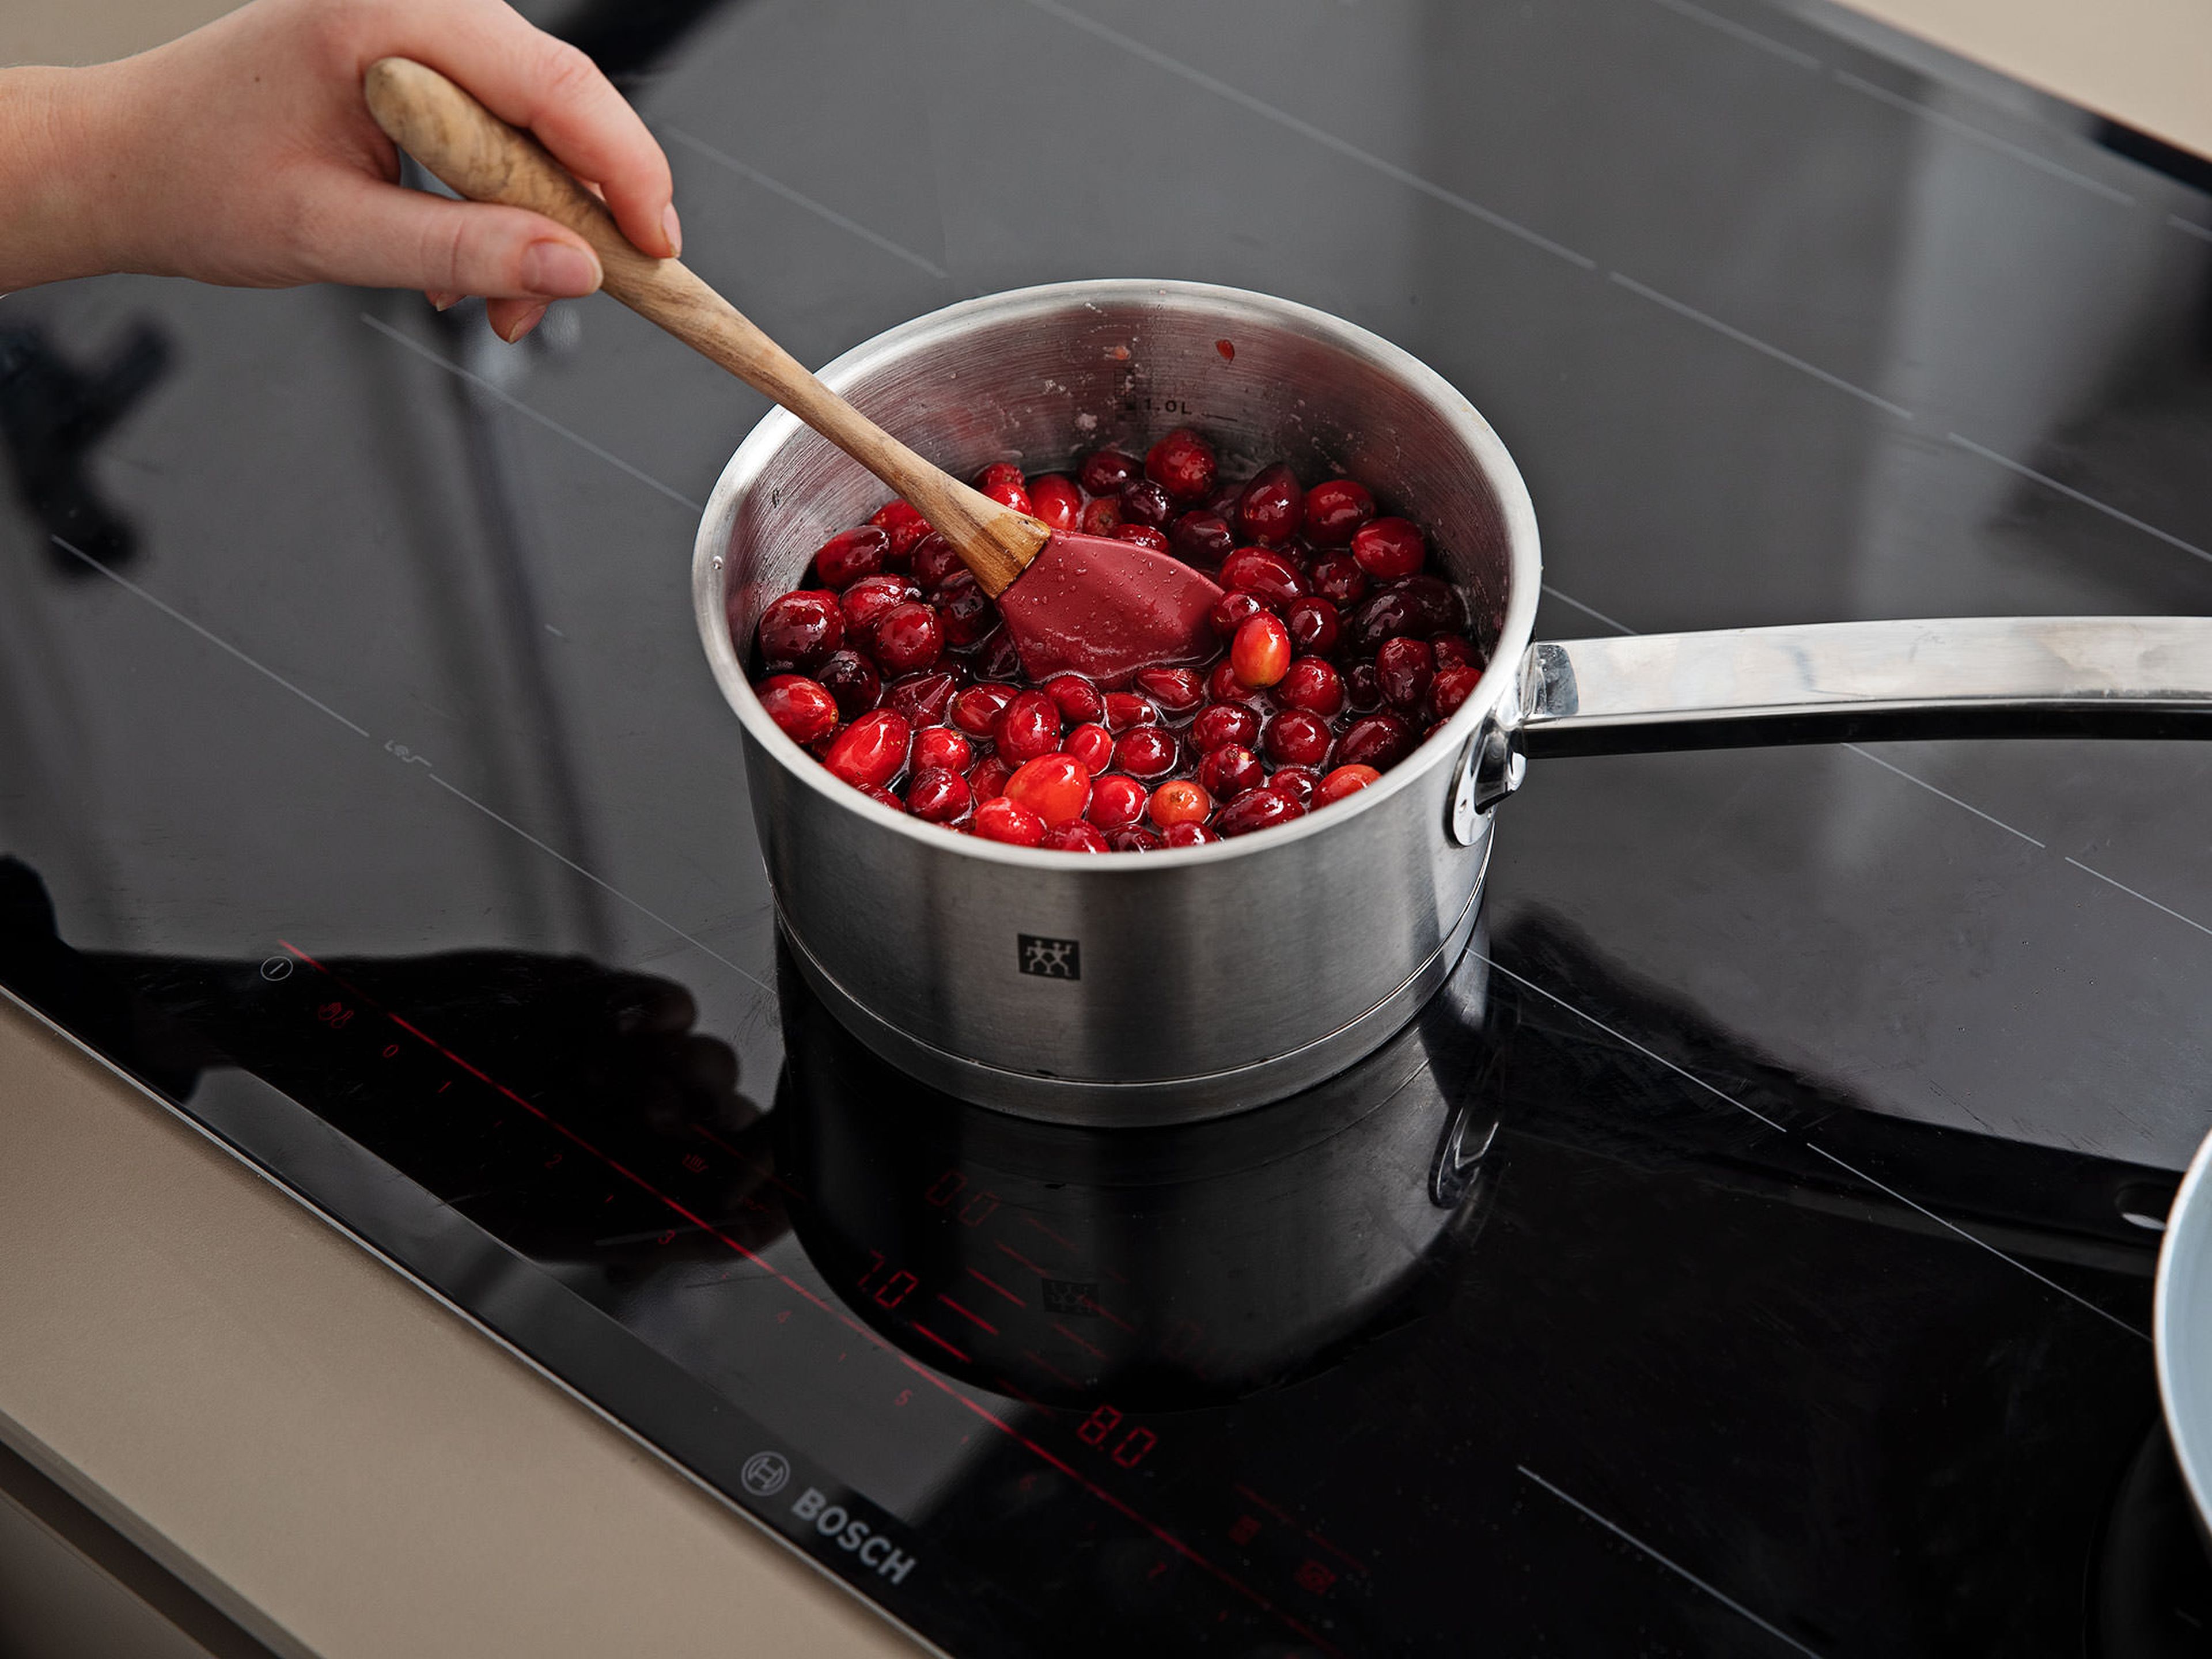 Backofen auf 220°C vorheizen. Für die Cranberryfüllung Vanilleschote längs halbieren, das Mark auskratzen und in einen Topf geben. Cranberrys, einen weiteren Teil des Zuckers, Vanillepuddingpulver, Speisestärke und das übrige Wasser zugeben. Kurz aufkochen lassen, dann Hitze reduzieren und für ca. 20 Min. einköcheln lassen. Zum Abkühlen beiseitestellen, anschließend glatt pürieren.